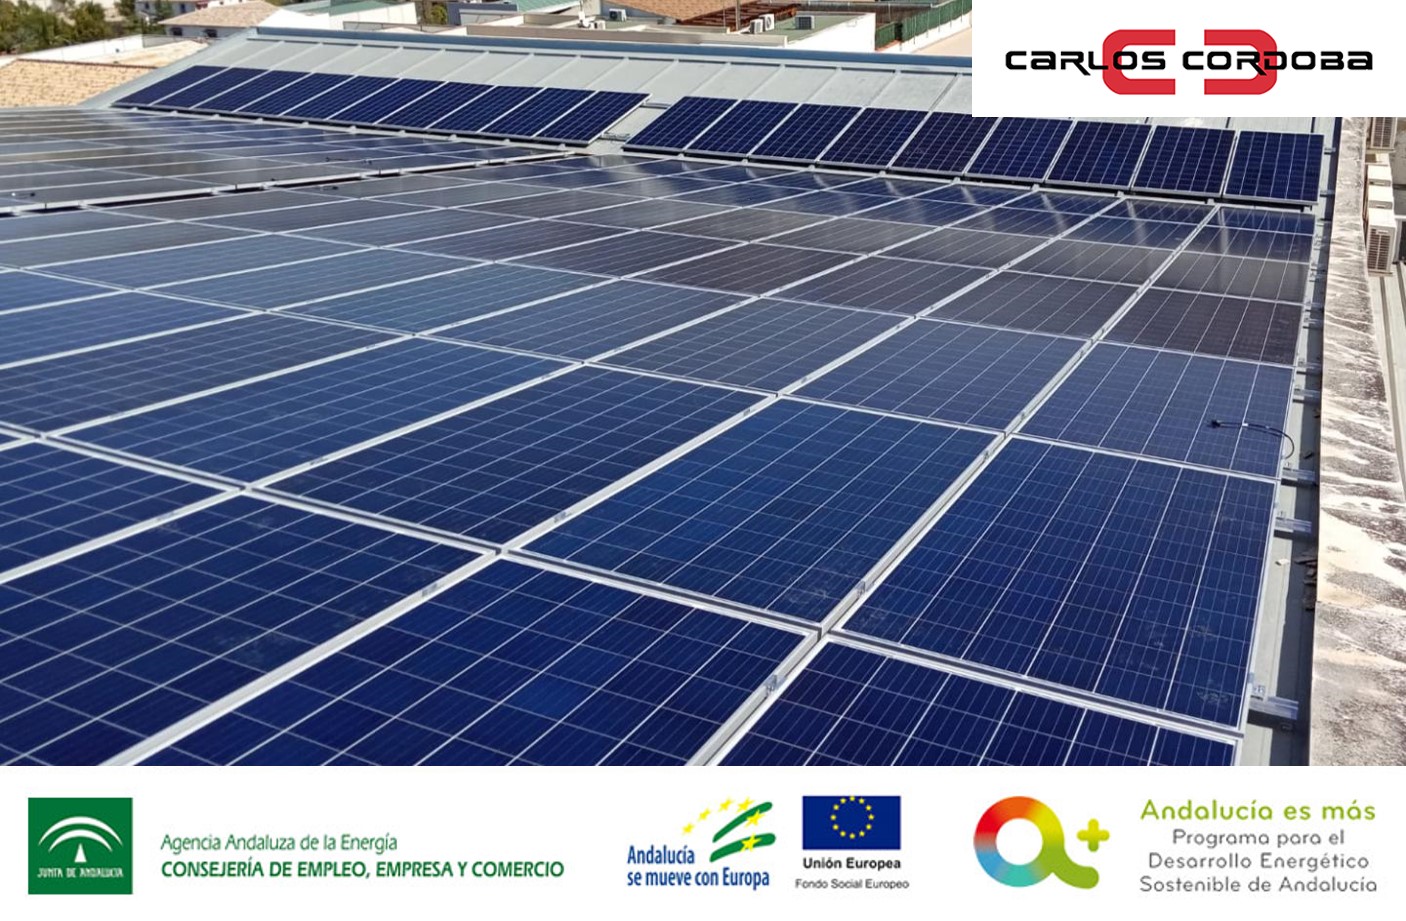 Subvención instalaciones de energía solar fotovoltaica para Confecciones Carlos Córdoba, S.L.